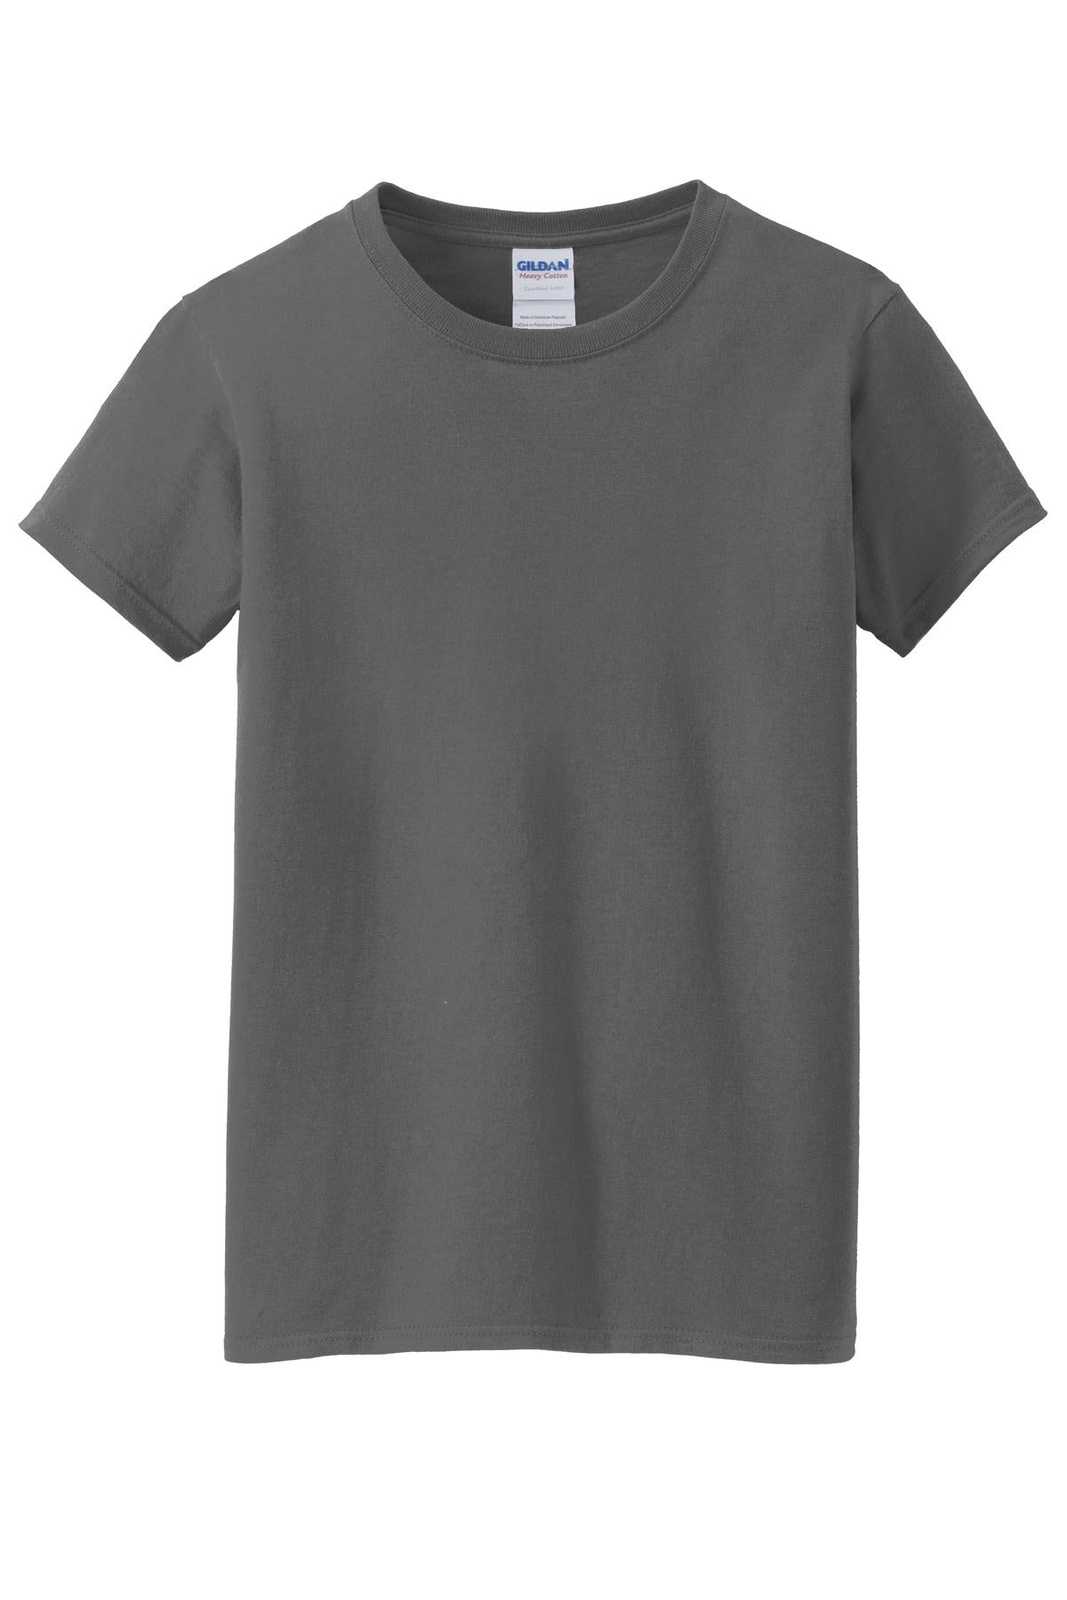 Gildan 5000L Ladies Heavy Cotton 100% Cotton T-Shirt - Charcoal - HIT a Double